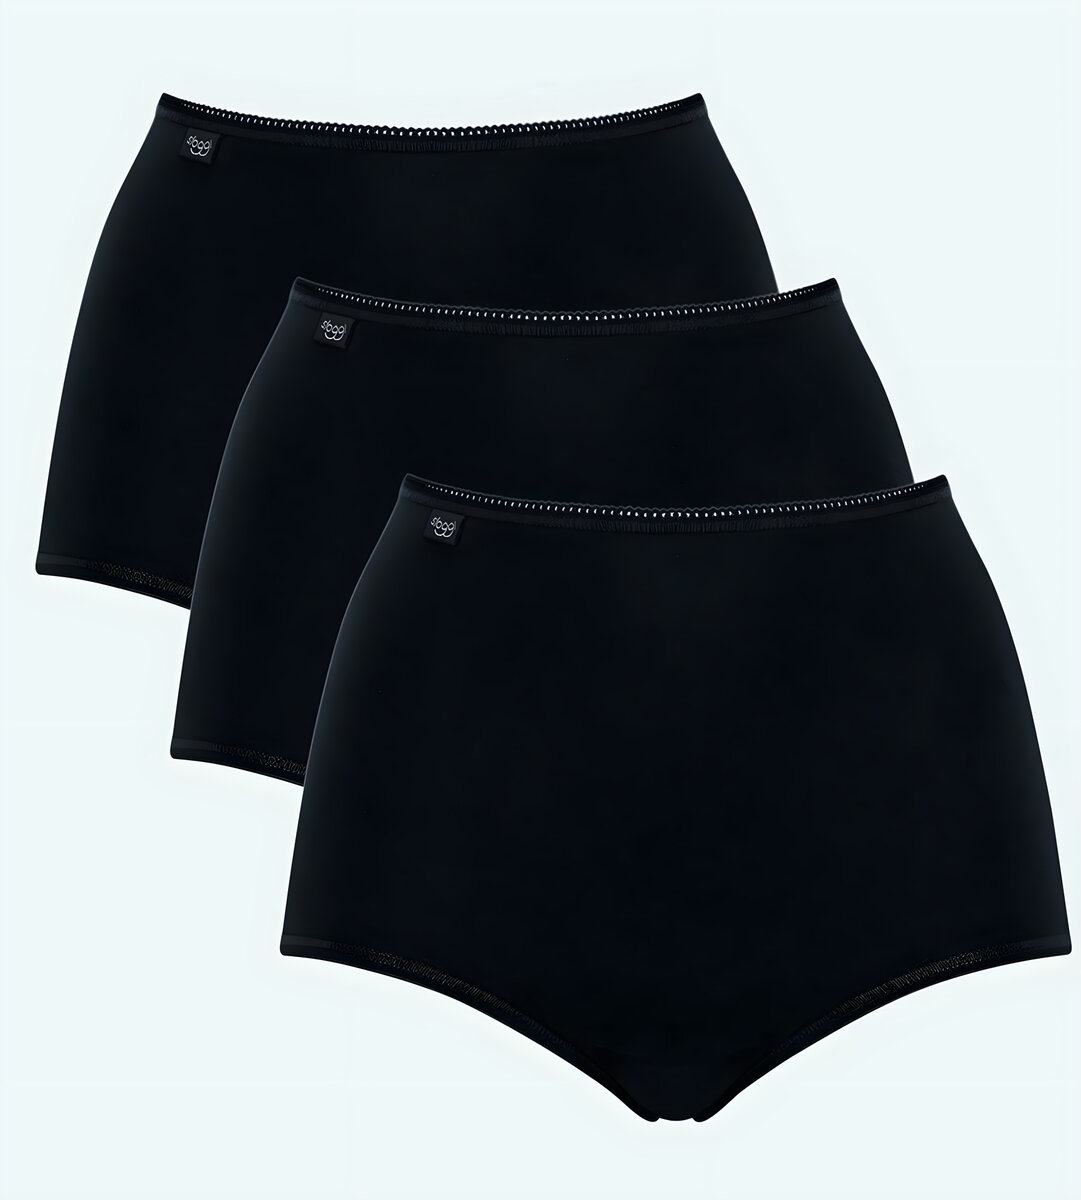 Dámské kalhoty Sloggi 7A1B35 Cotton Maxi C3P černé, BLACK 46 i343_10167190-0004-46